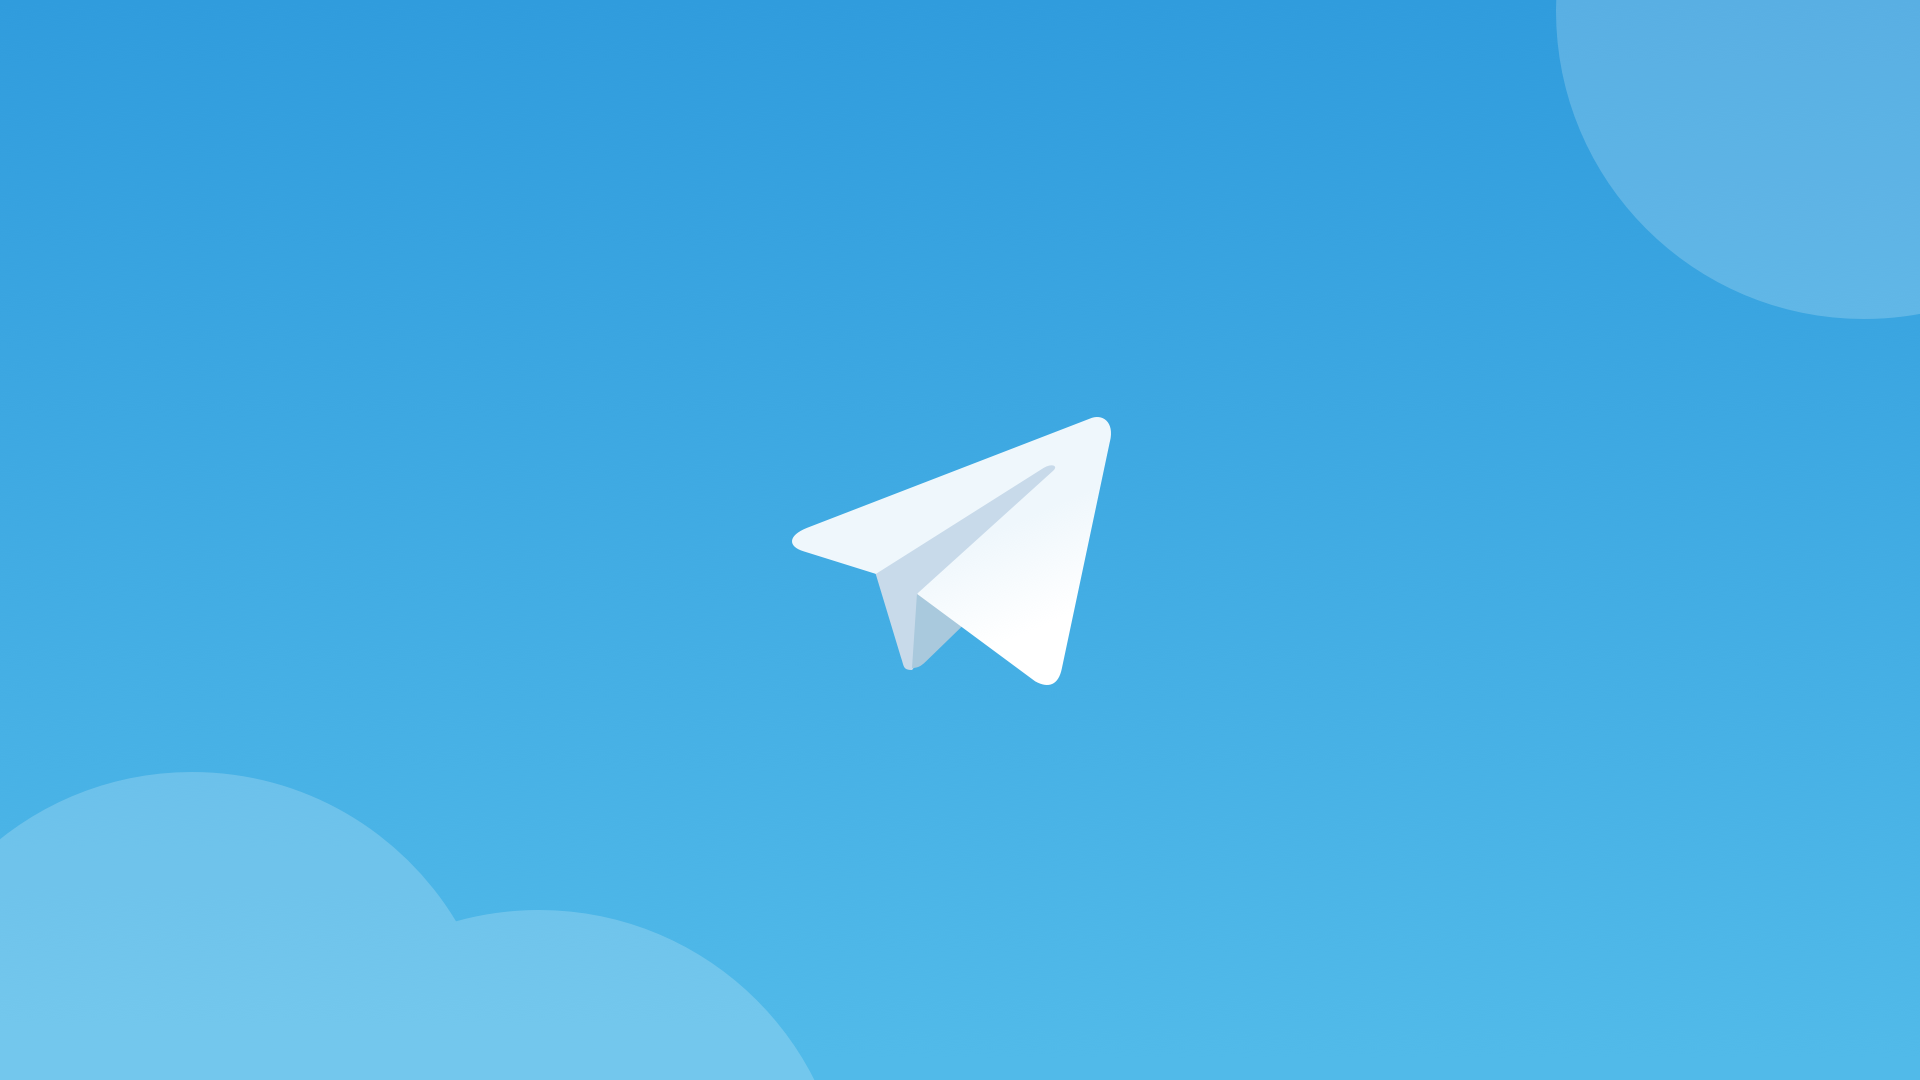 Павло Дуров пояснив, якими будуть офіційні рекламні пости в Telegram